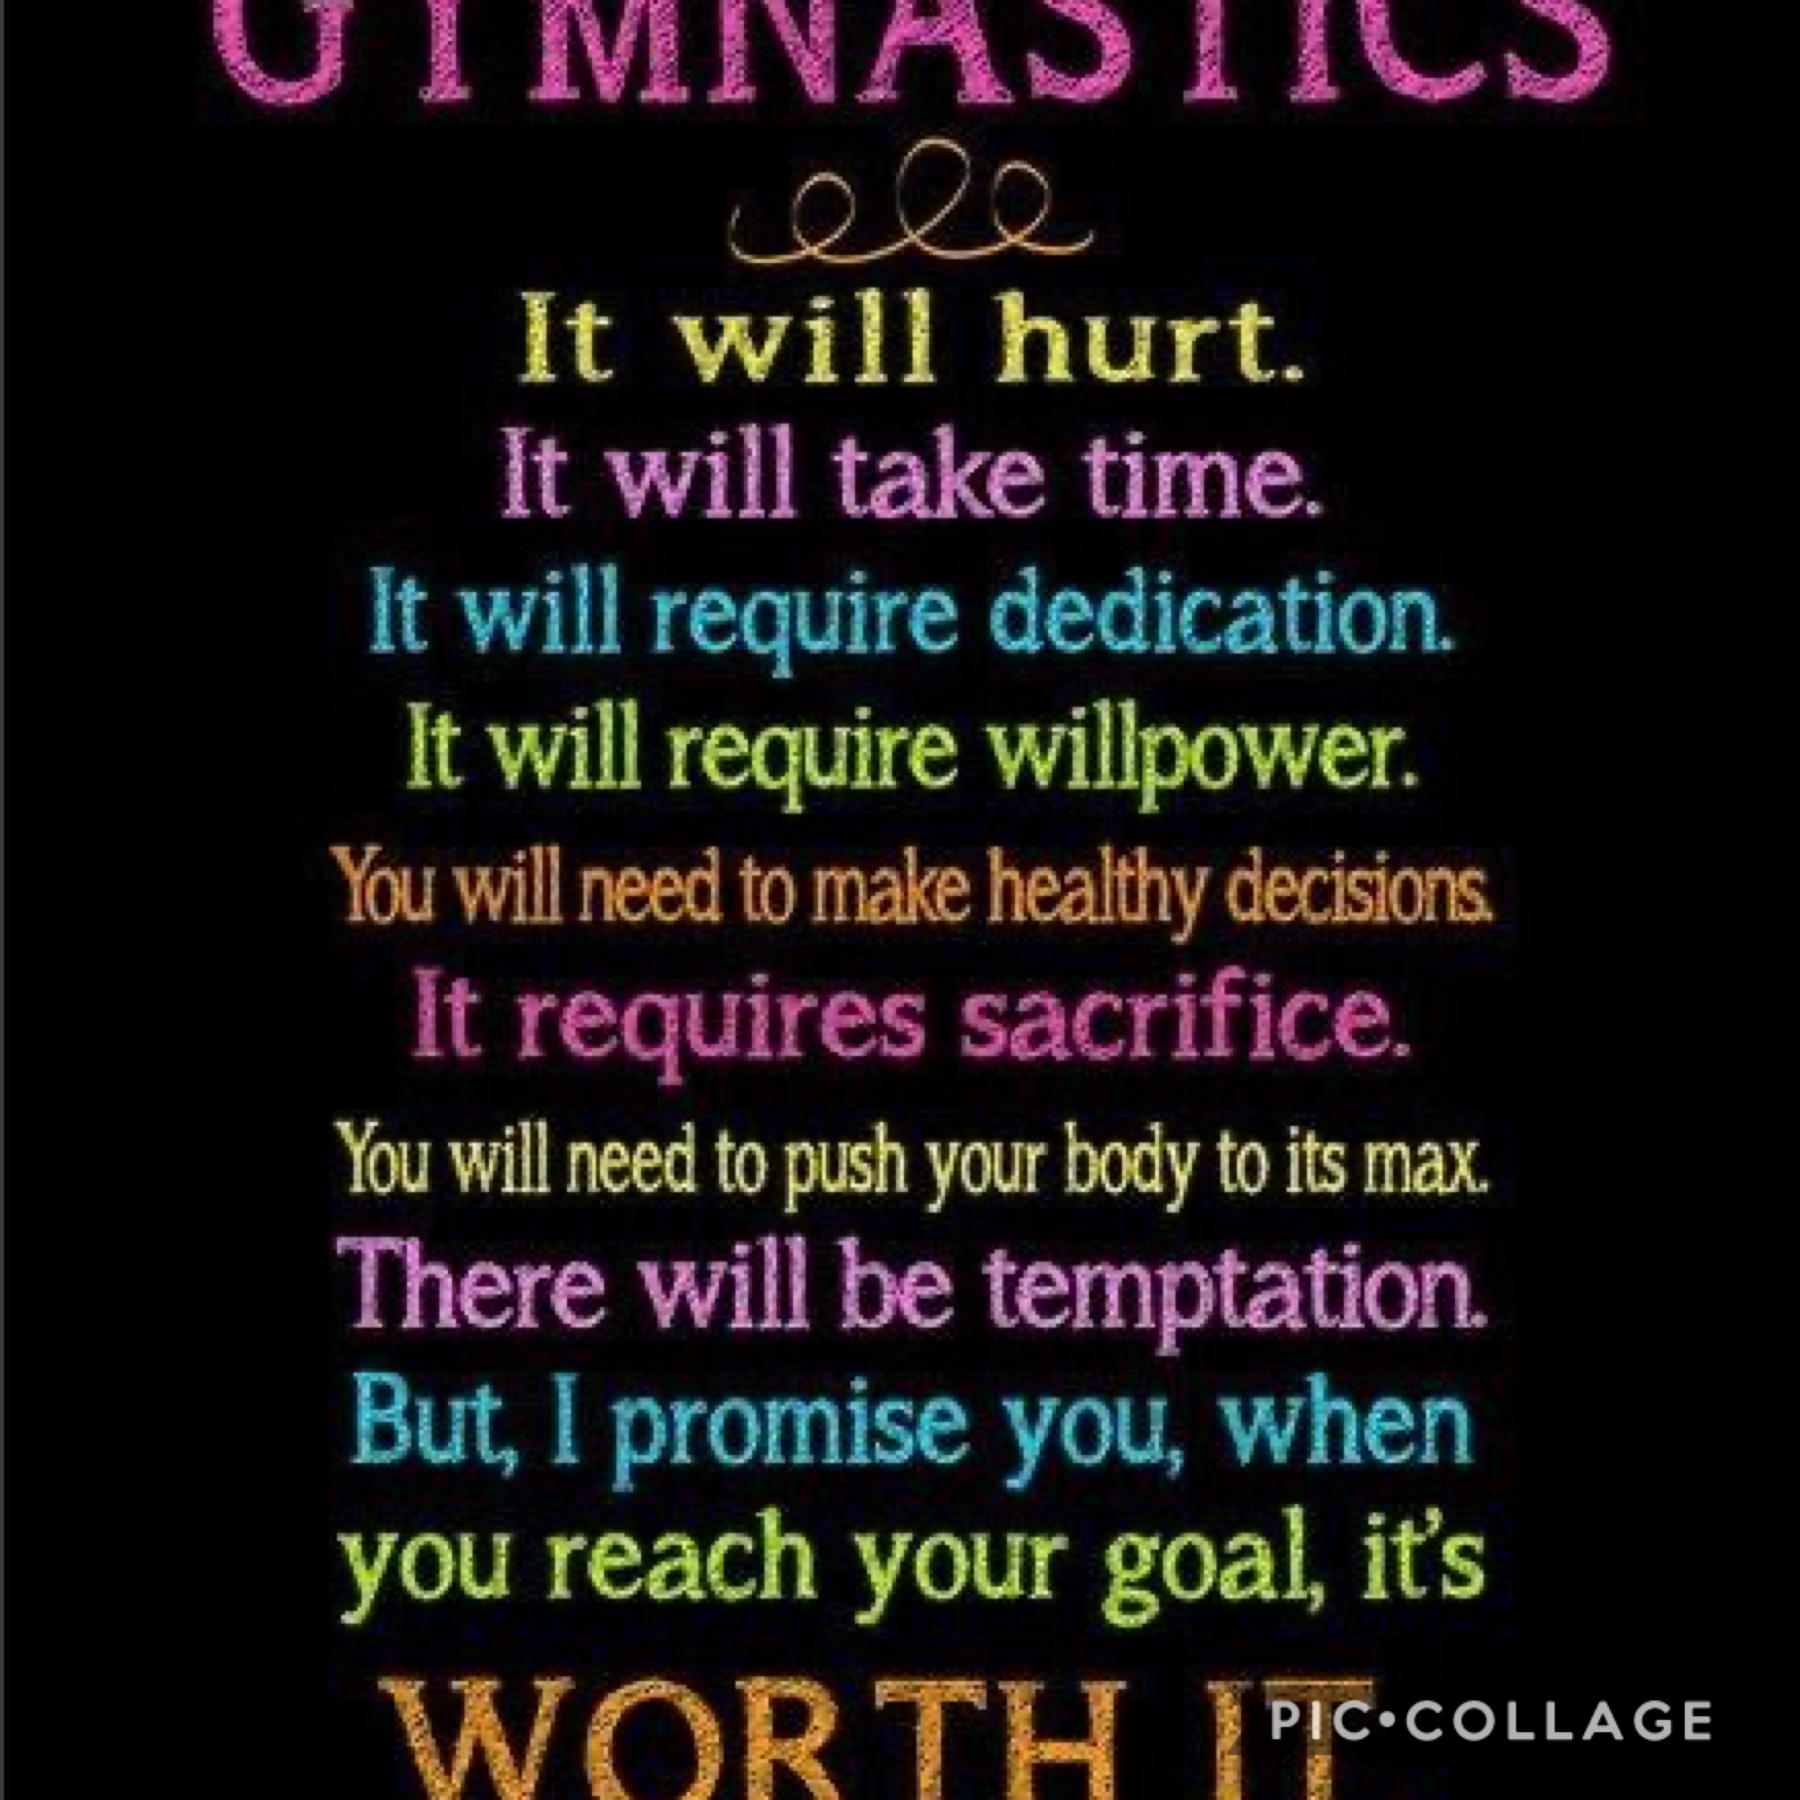 Gymnastics quote